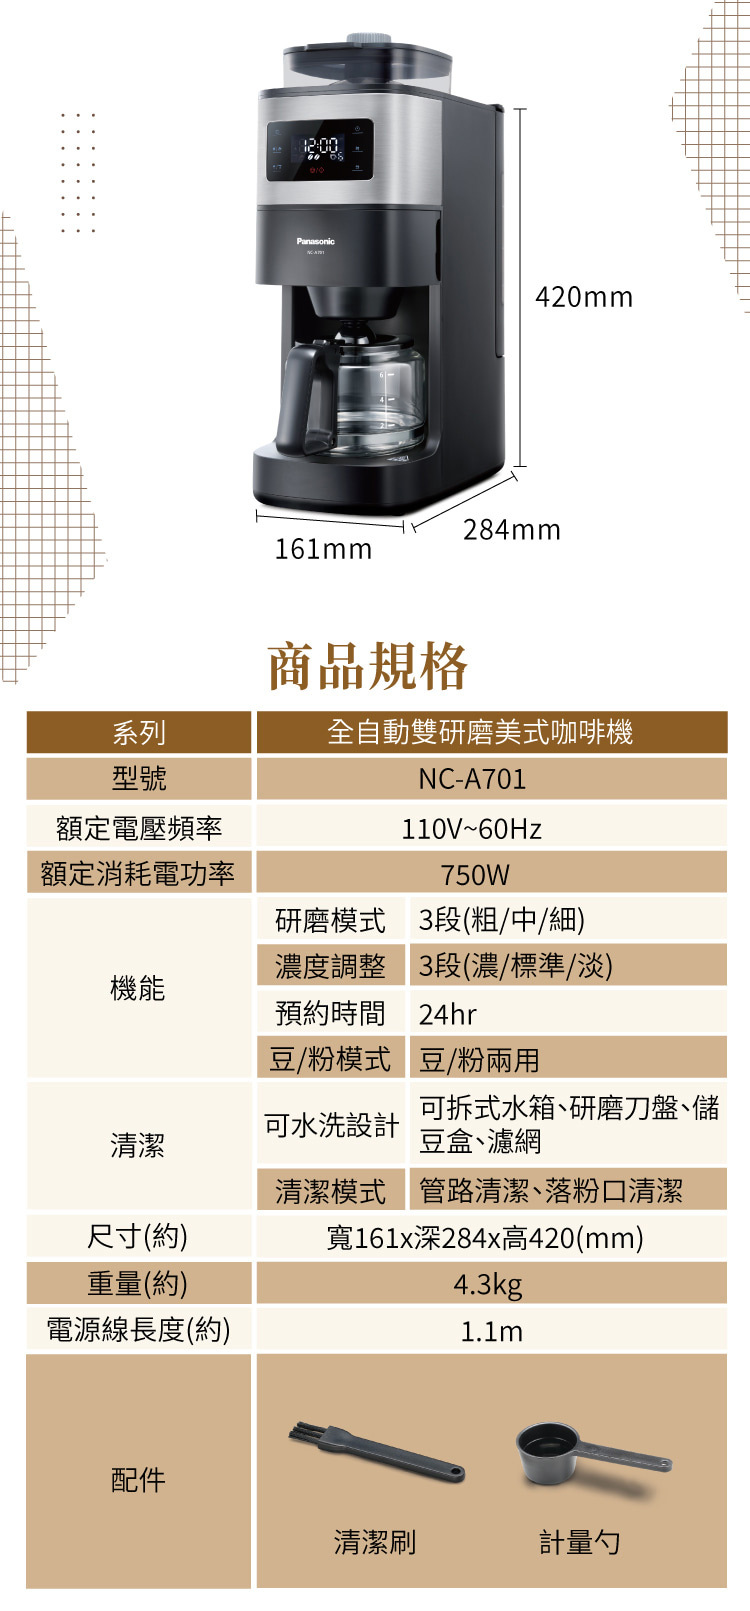 NC-A701 全自動 雙研磨美式 咖啡機